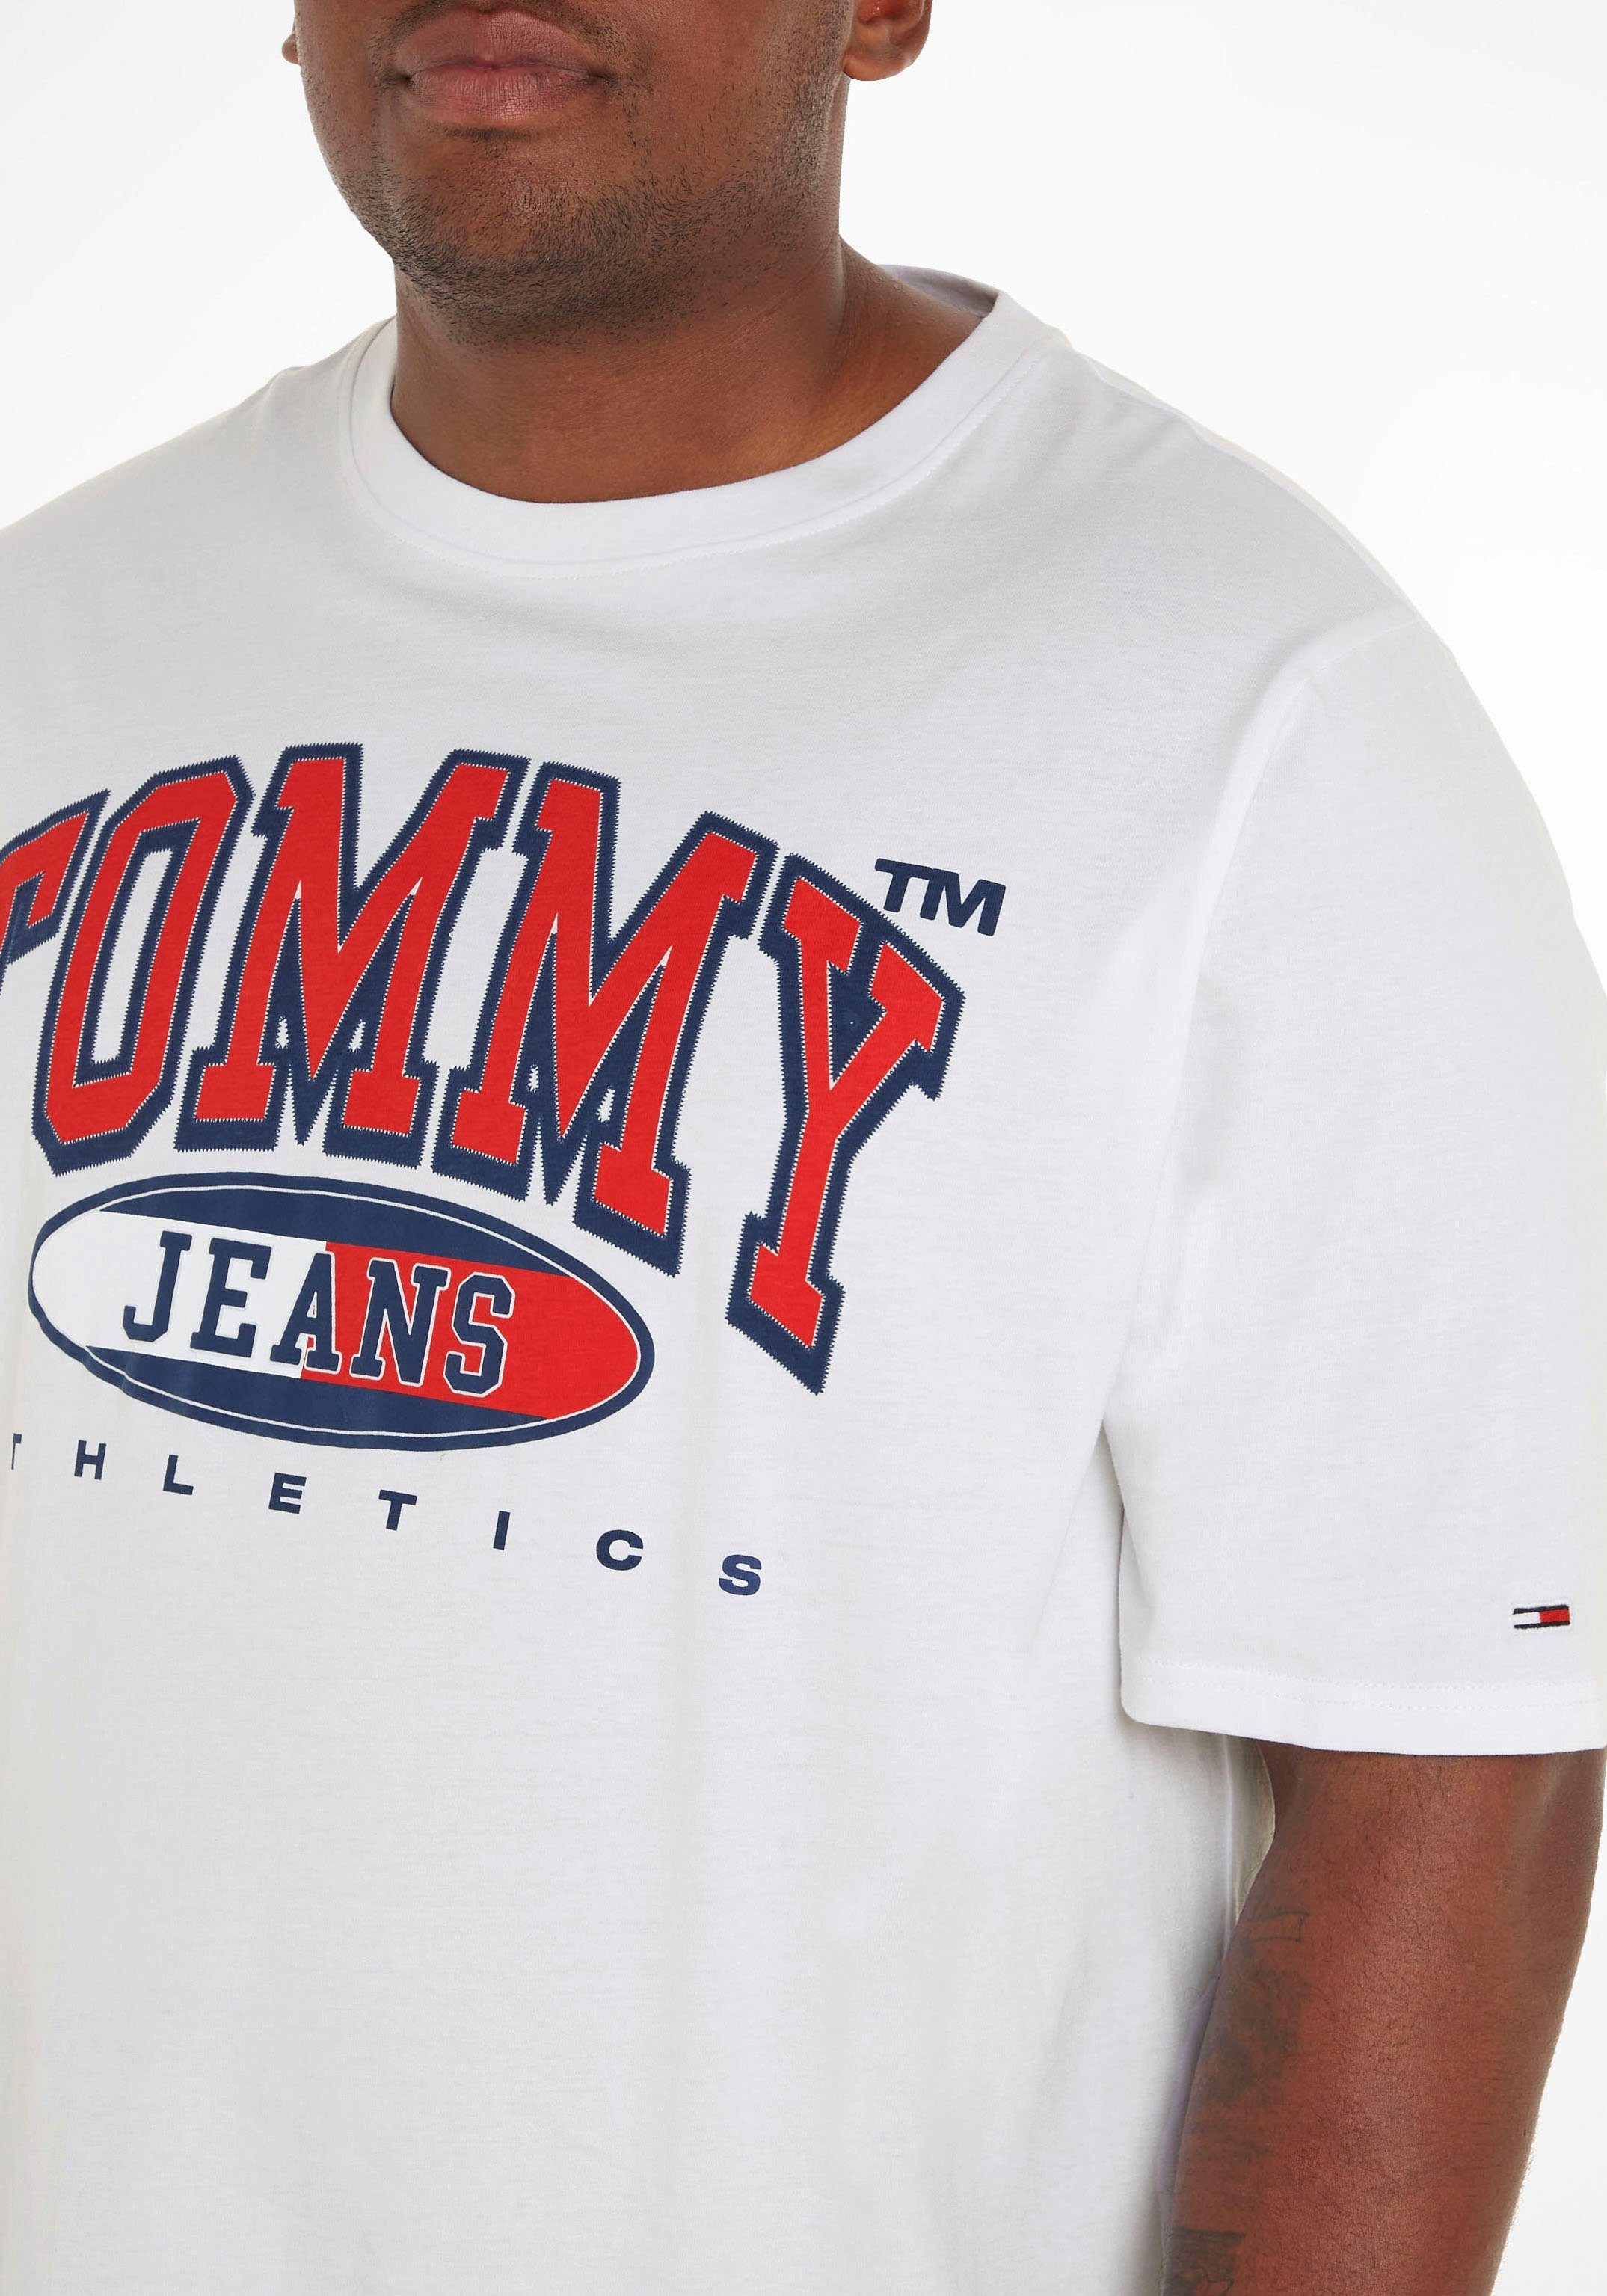 TJM Tommy White auf ESSENTIAL TEE Print der PLUS Brust Jeans T-Shirt mit Plus GRAPHIC